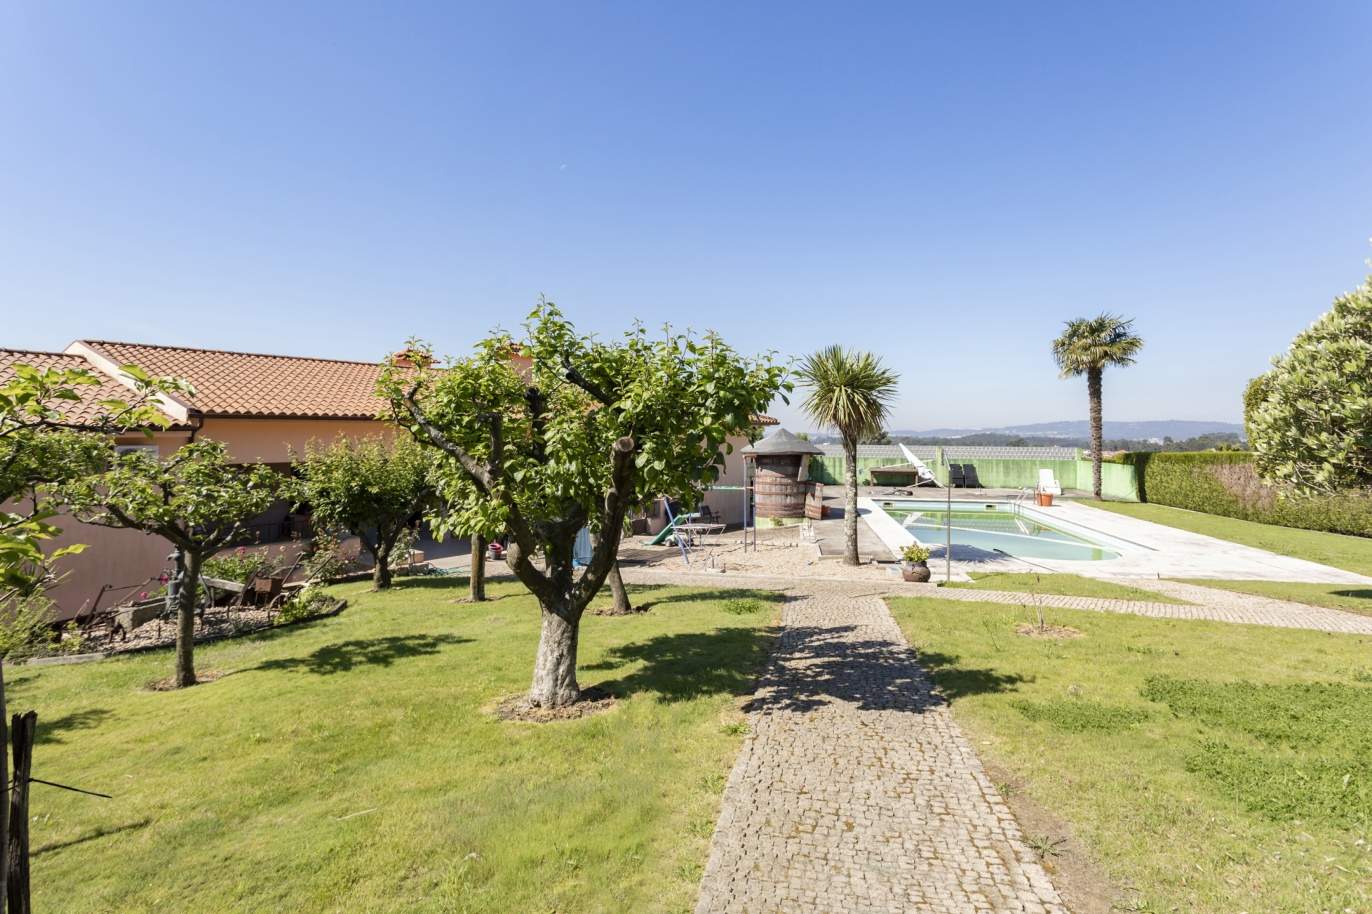 Casa de campo com piscina e jardim, para venda, em Paços de Ferreira_171178